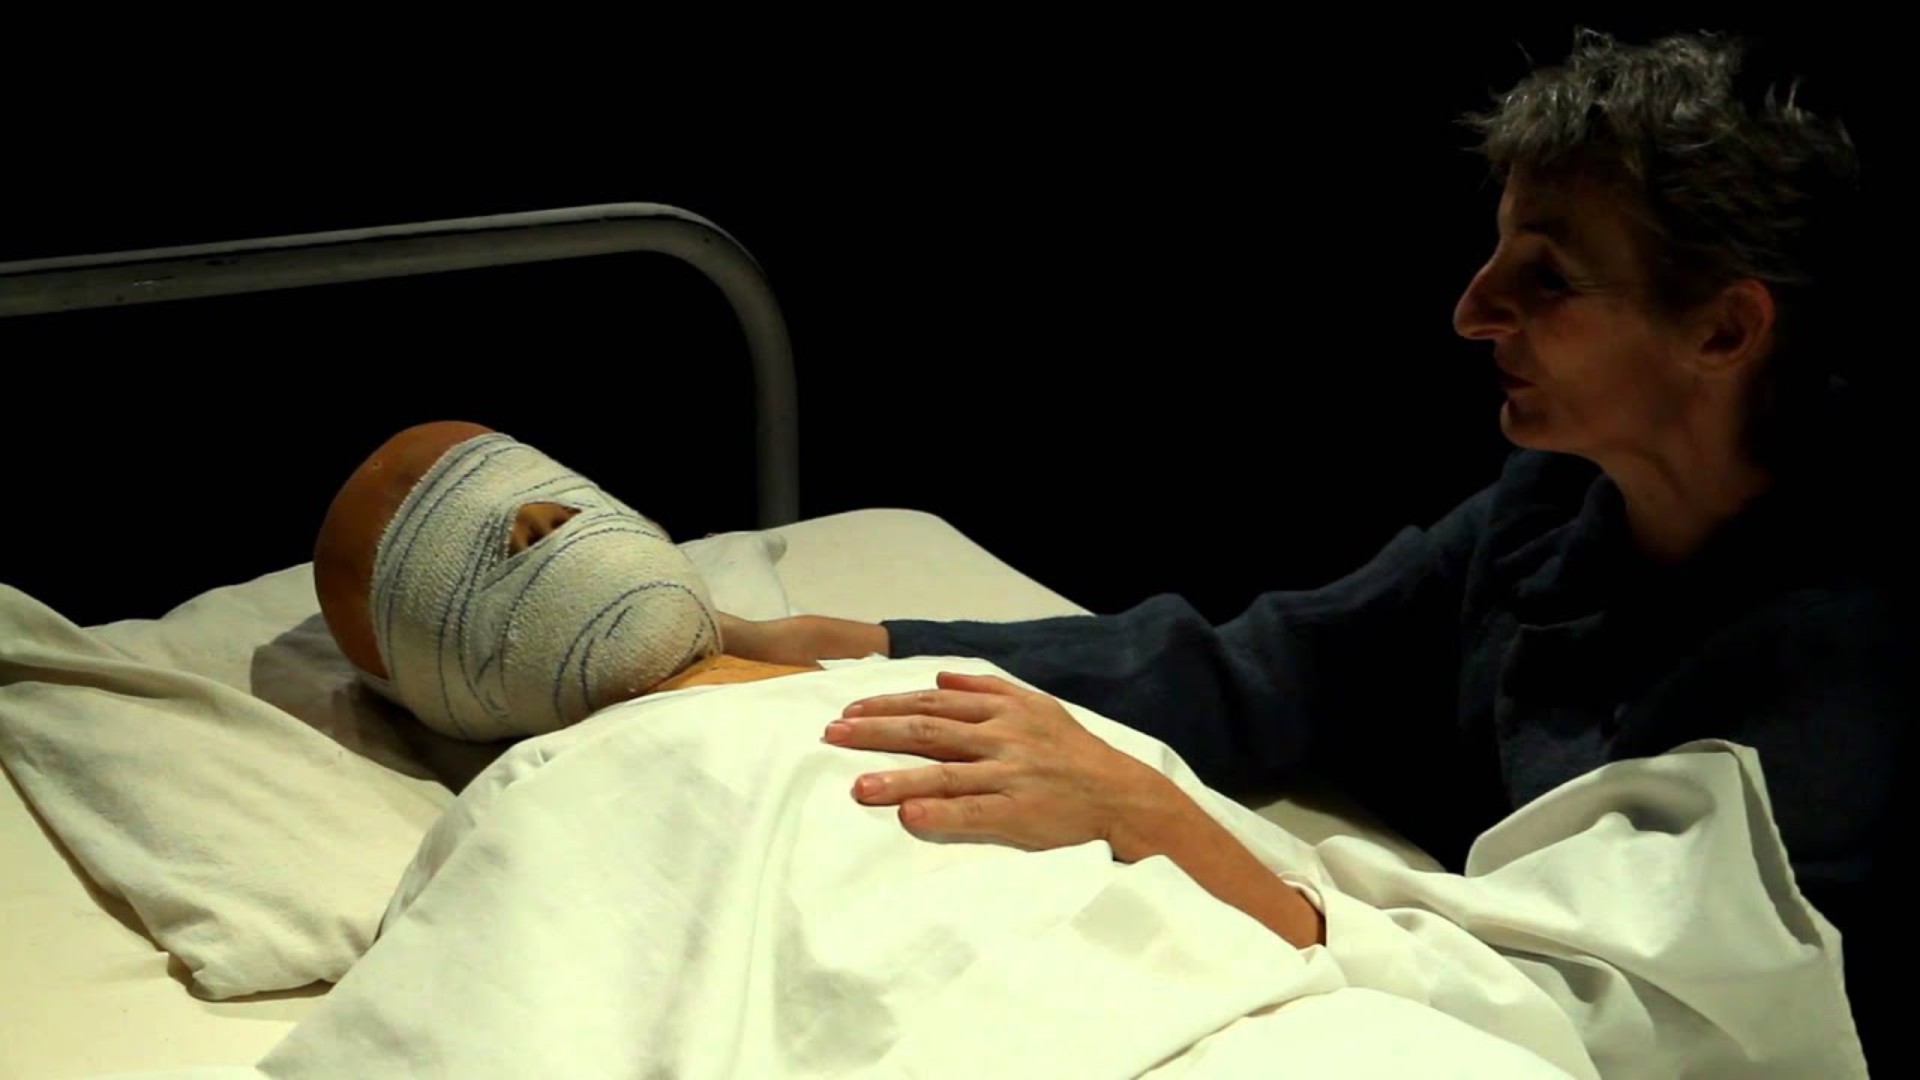 تیموتی بامز باندپیچی شده در بیمارستان در فیلم Johnny Got His Gun